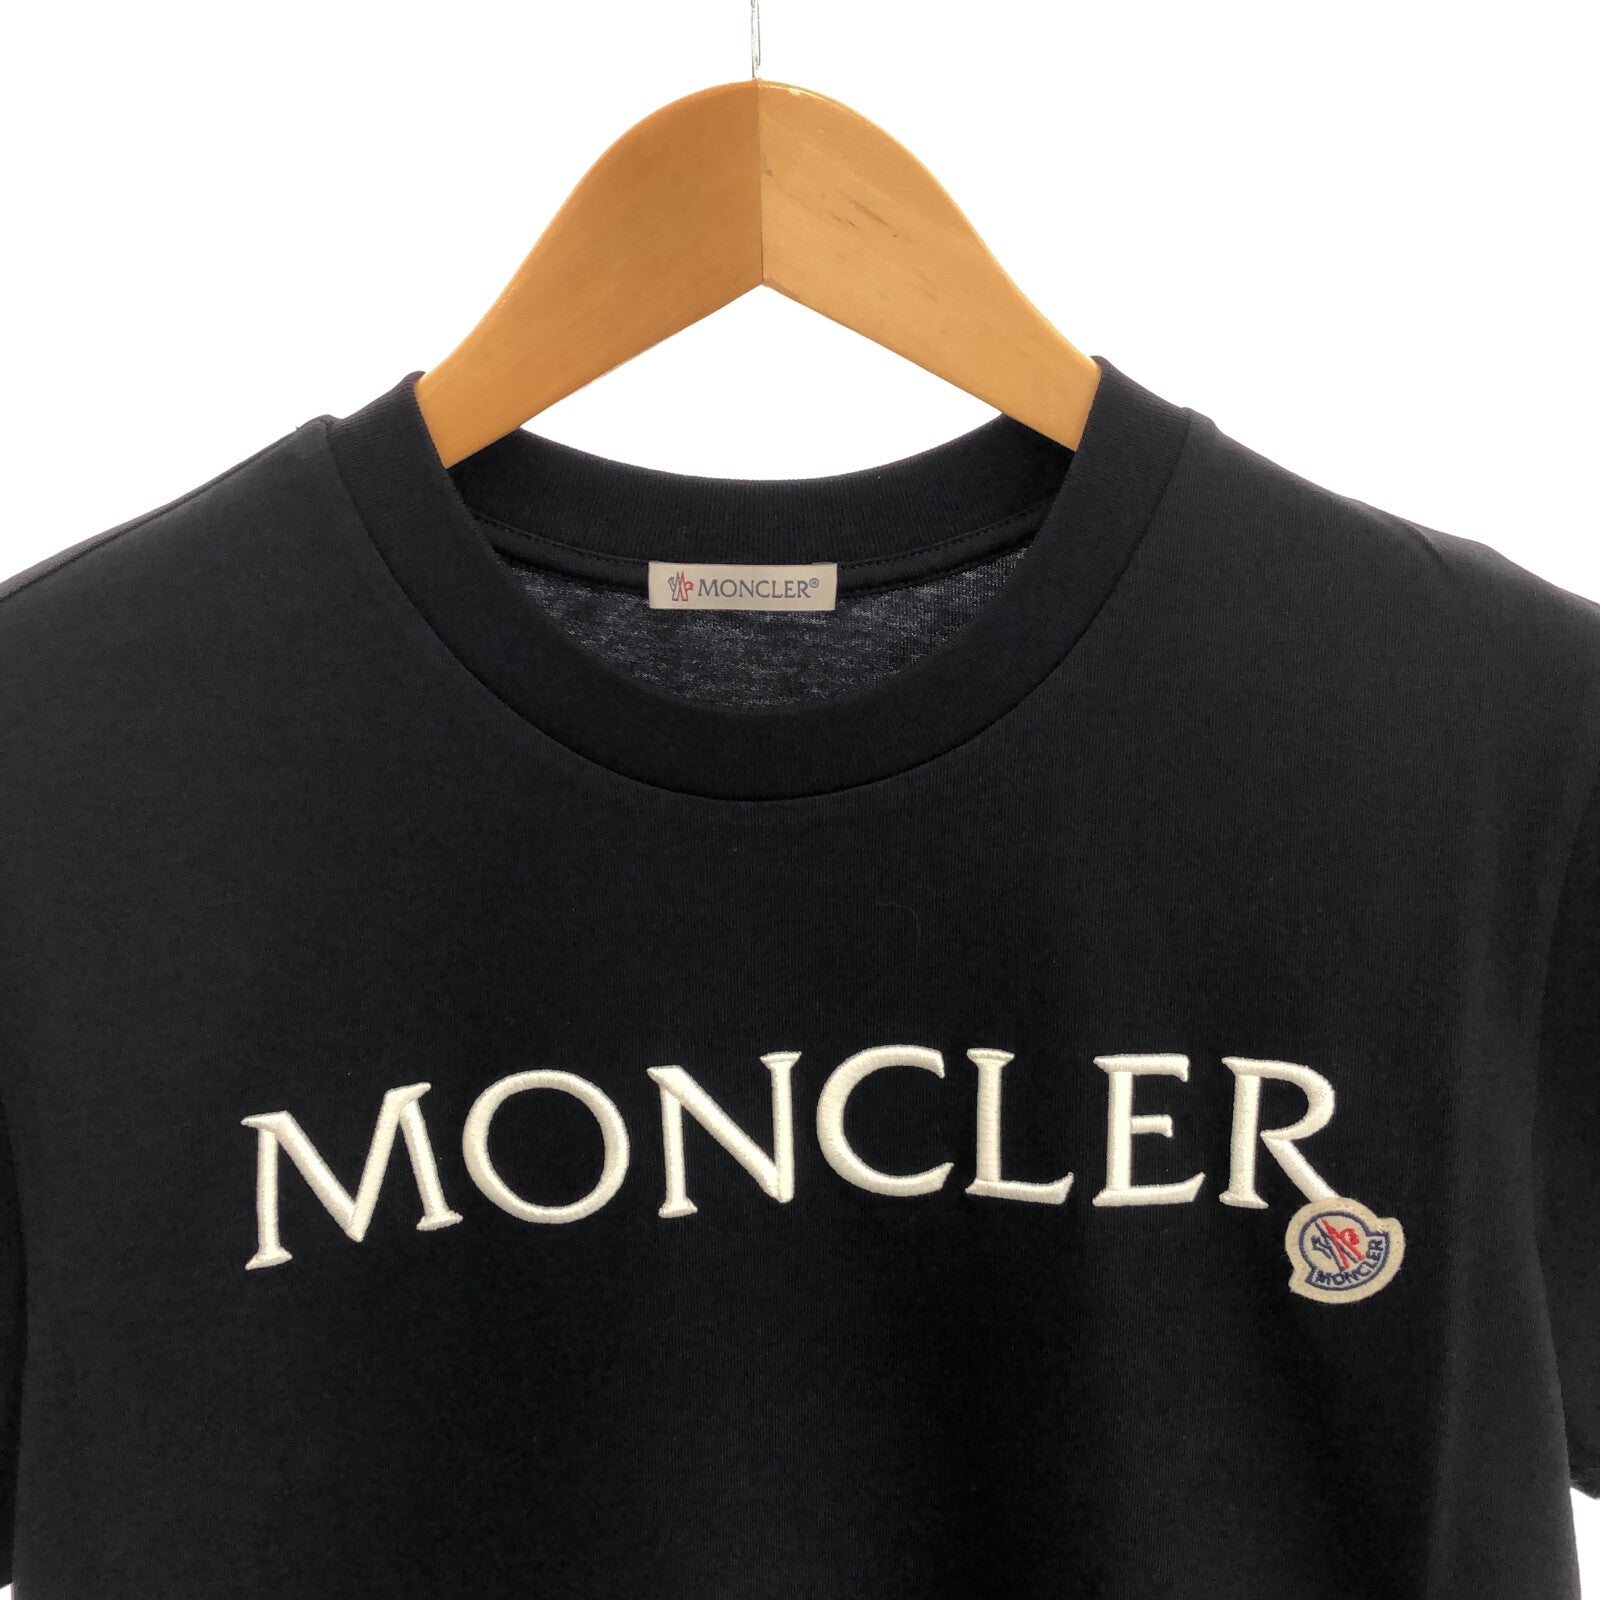 Moncler MONCLER  Half-Hand   Tops Cotton  Black 8C00006829HP999S